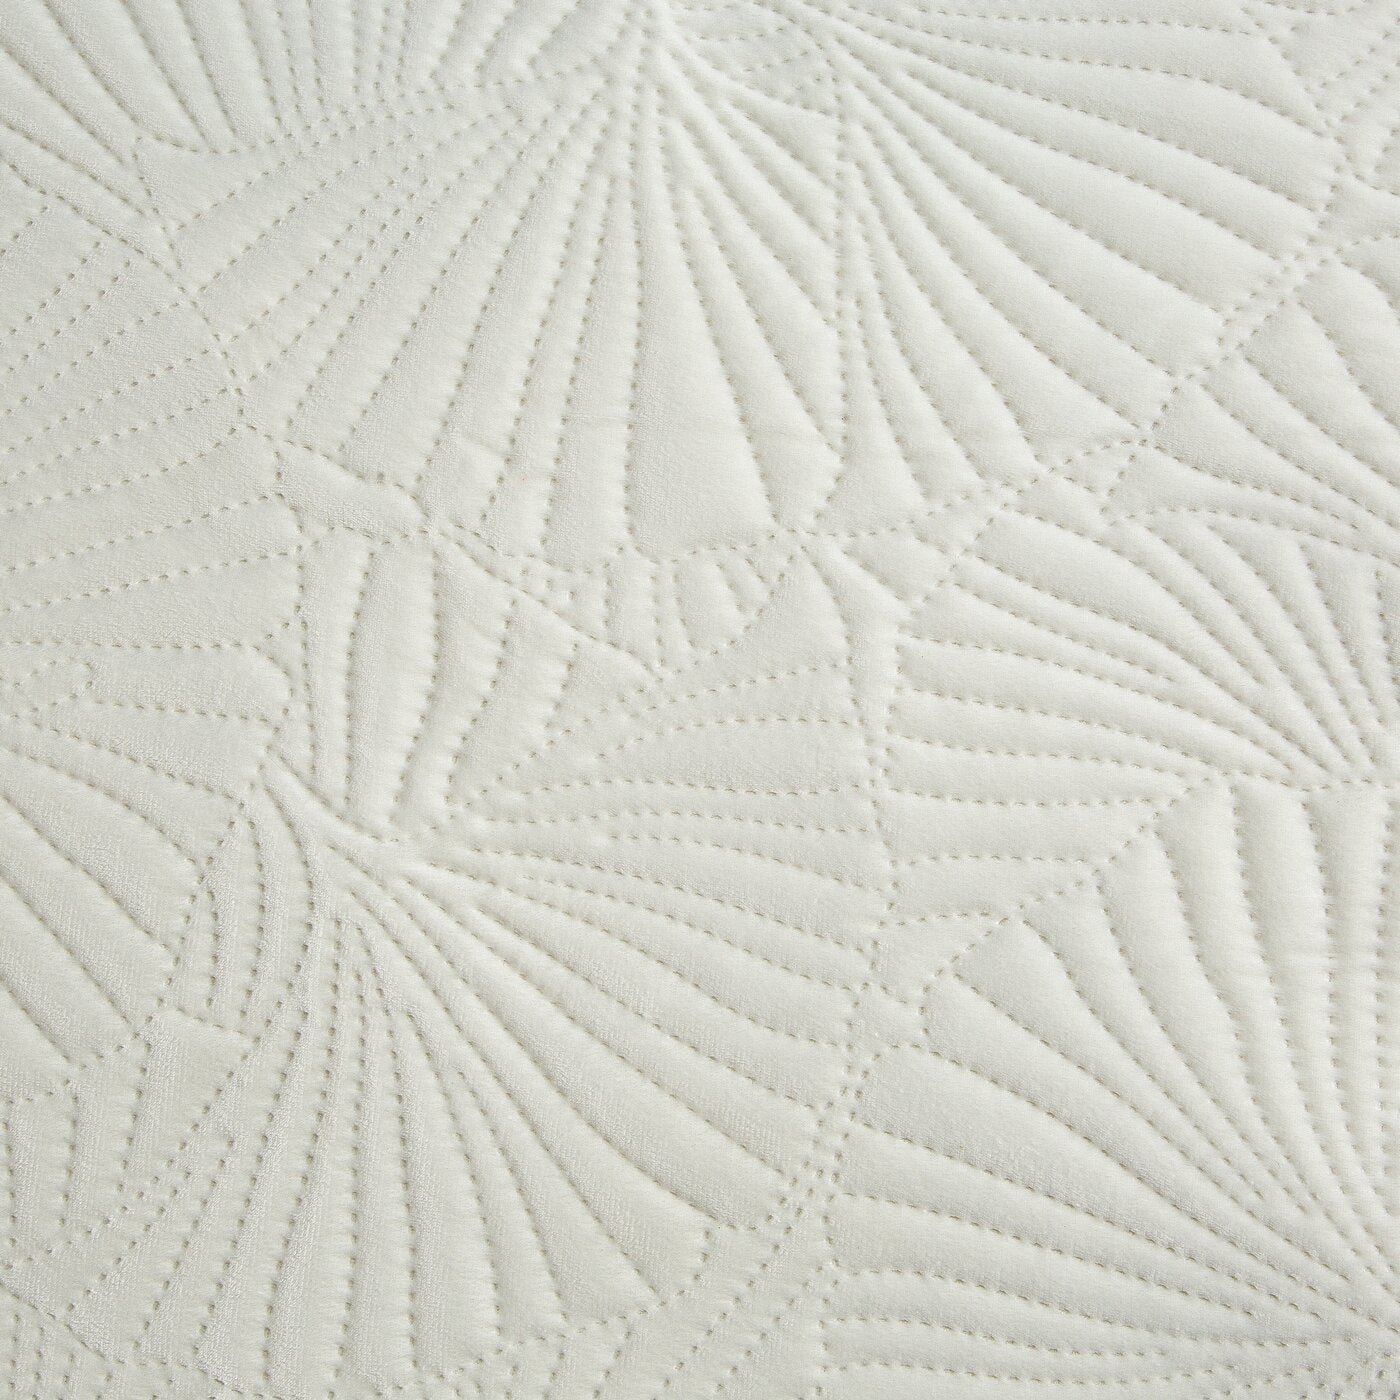 Cuvertură de Pat din catifea nobilă matlasată la cald cu model botanic de frunze de ginkgo alb GLOSS OF WHITE - Colecția Limitată Luna Perdele de Poveste